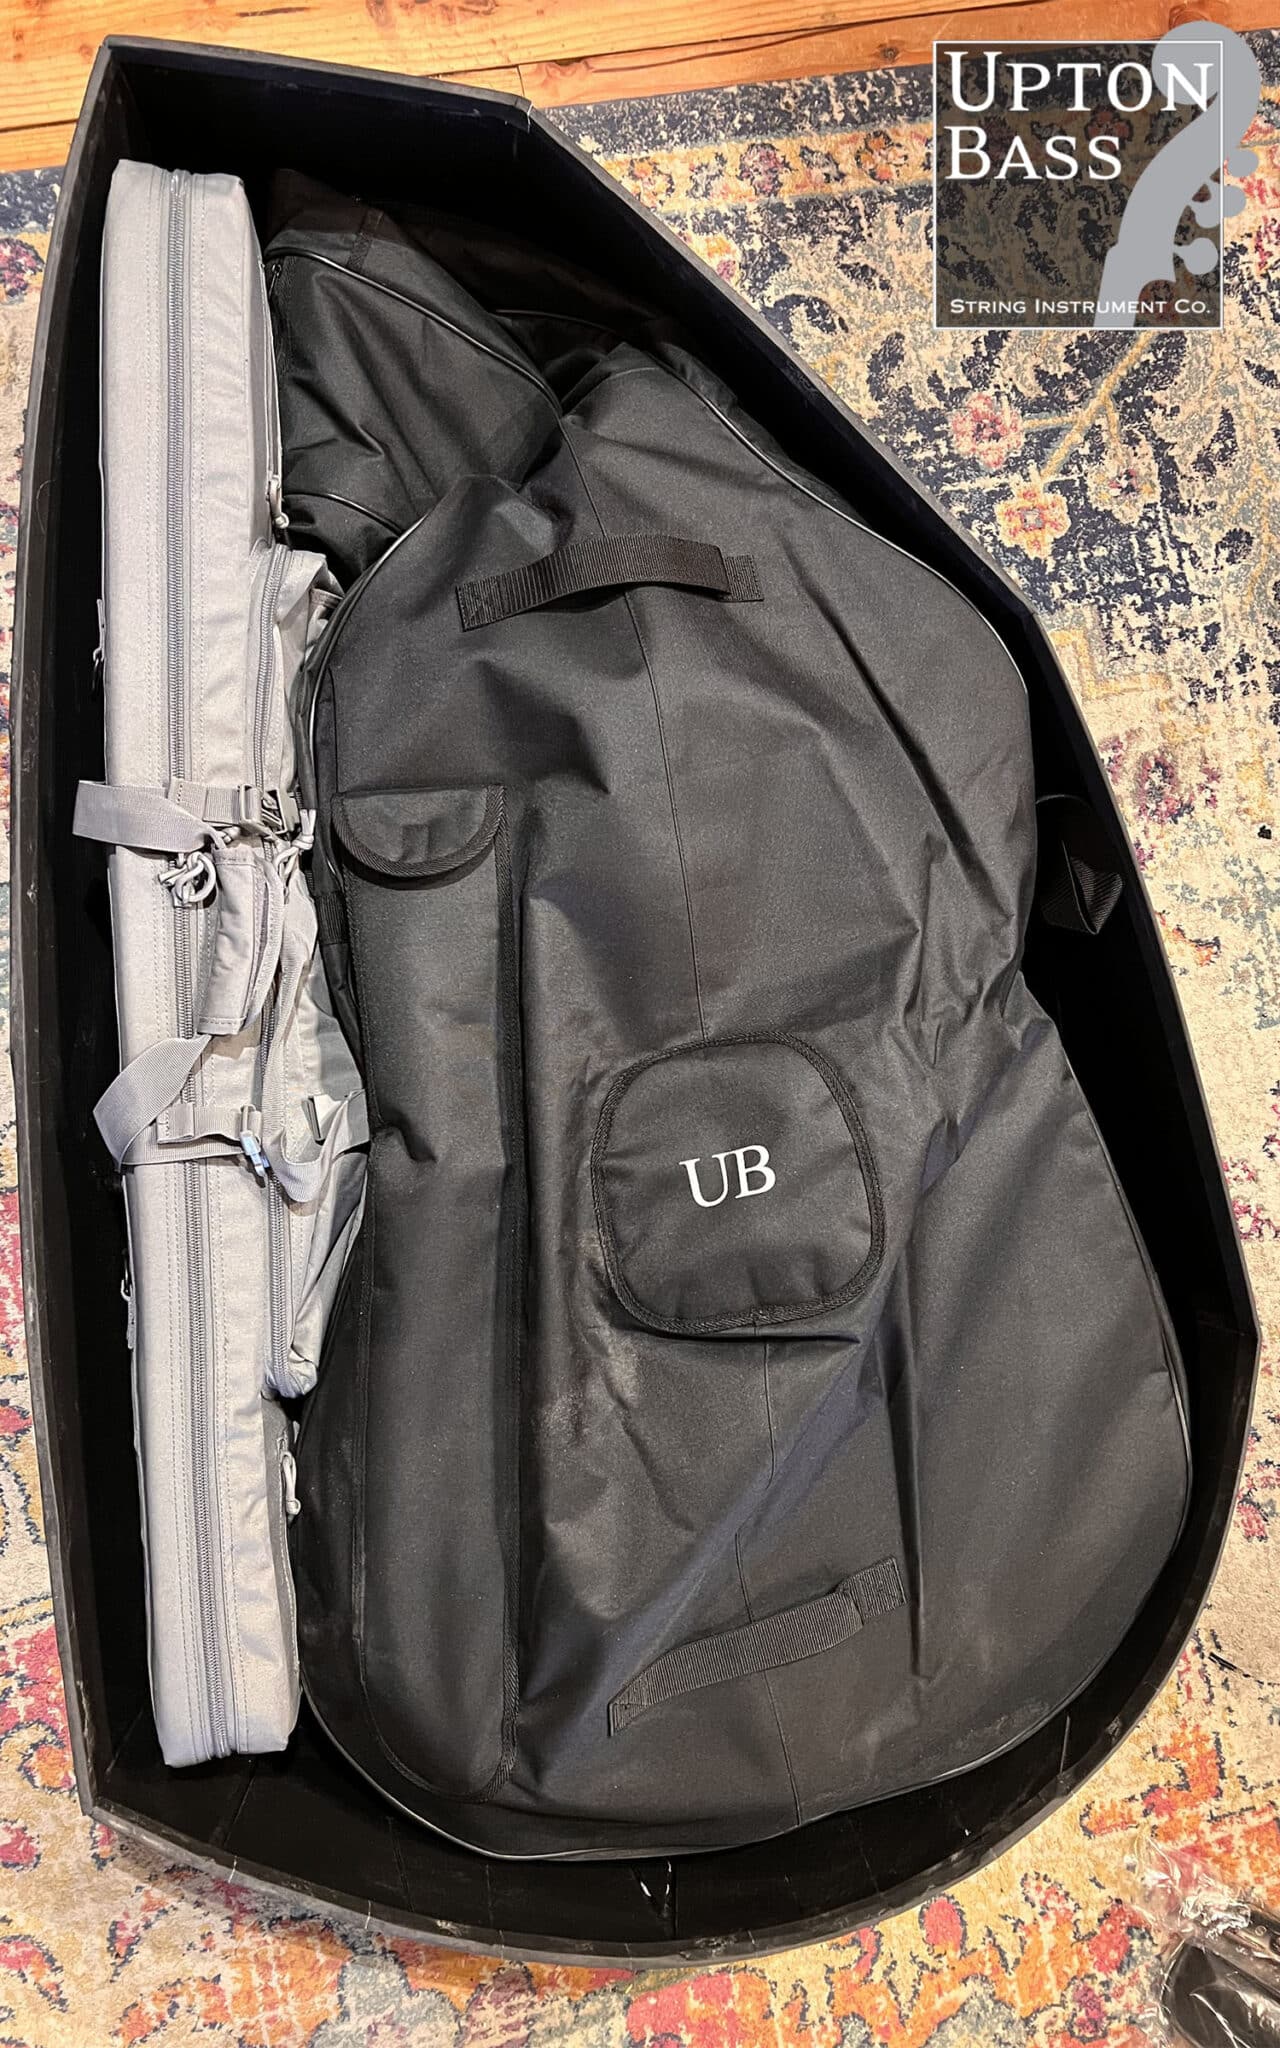 bass travel case